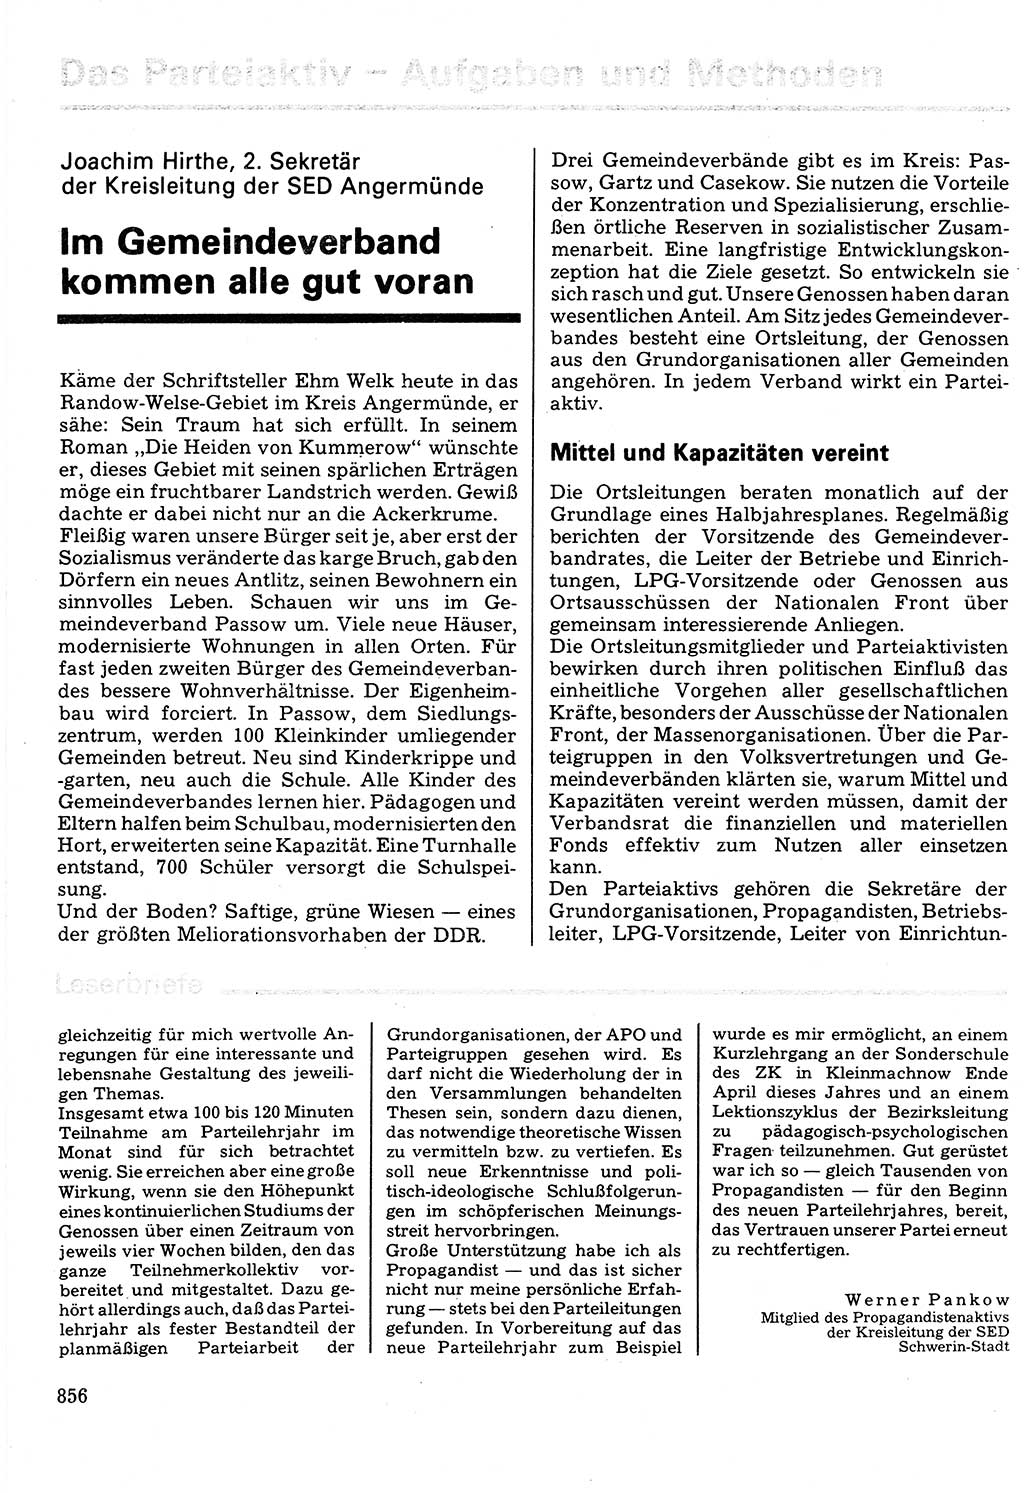 Neuer Weg (NW), Organ des Zentralkomitees (ZK) der SED (Sozialistische Einheitspartei Deutschlands) für Fragen des Parteilebens, 32. Jahrgang [Deutsche Demokratische Republik (DDR)] 1977, Seite 856 (NW ZK SED DDR 1977, S. 856)